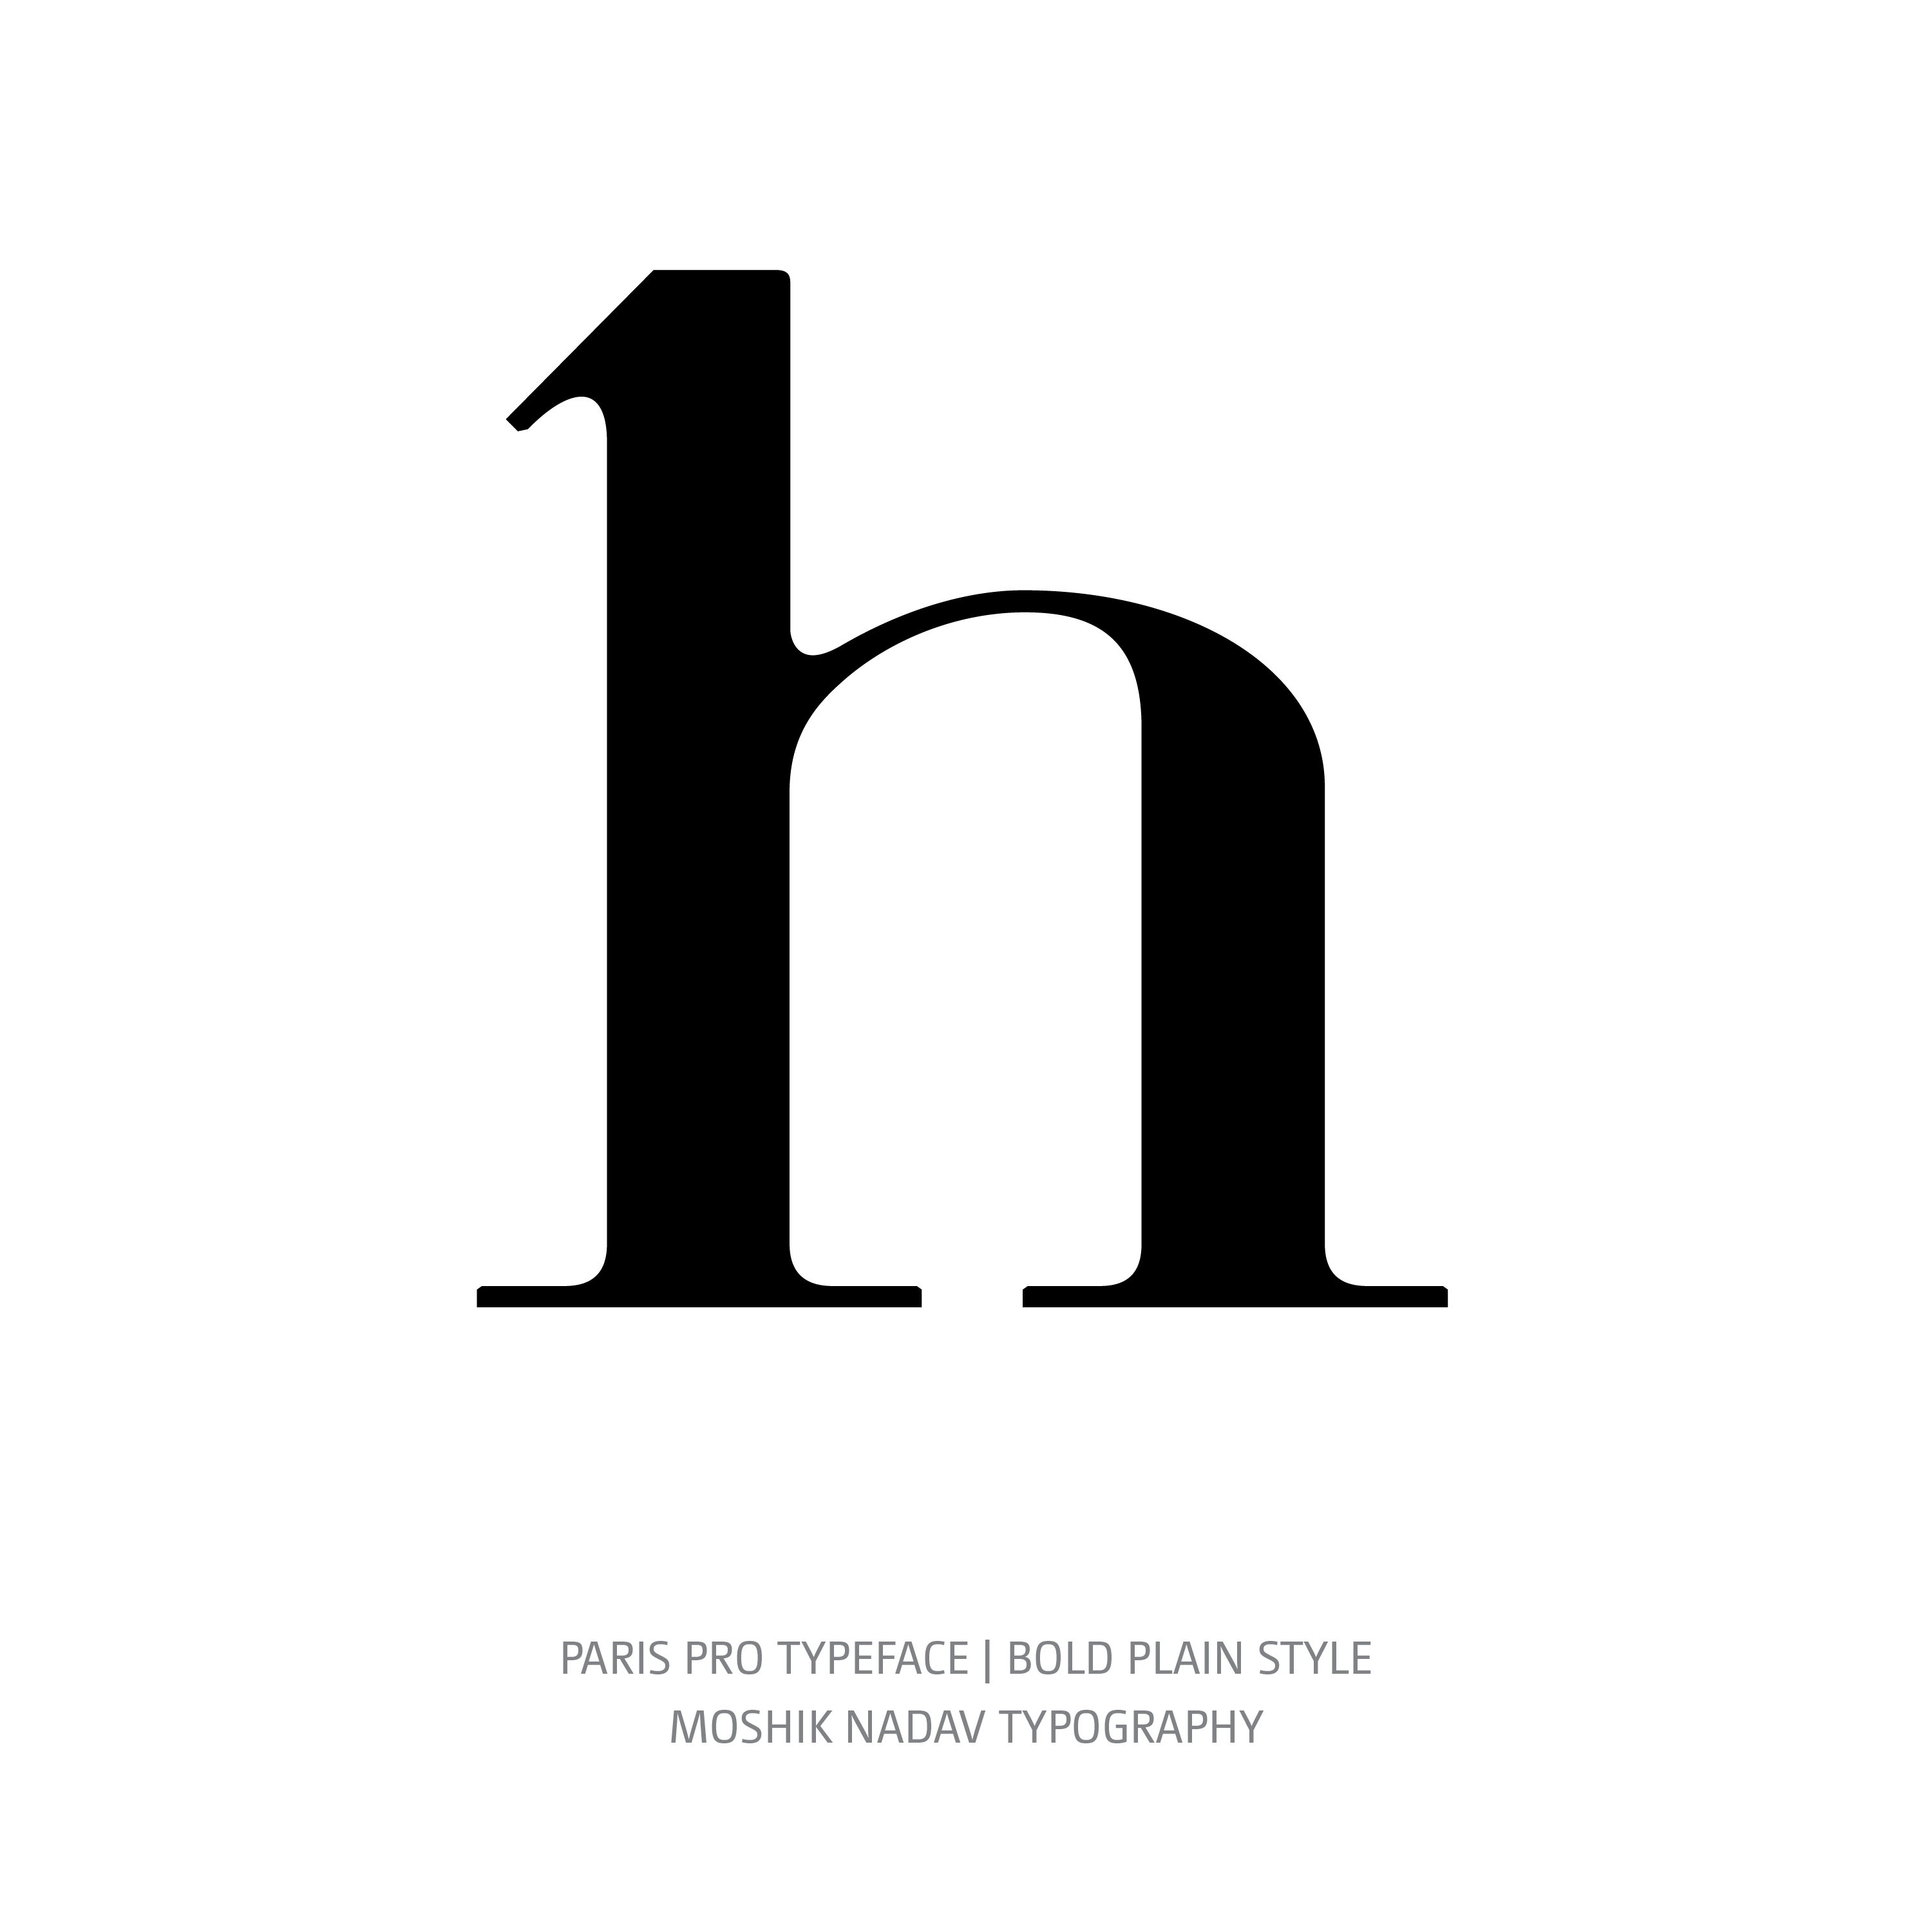 Paris Pro Typeface Regular Bold h